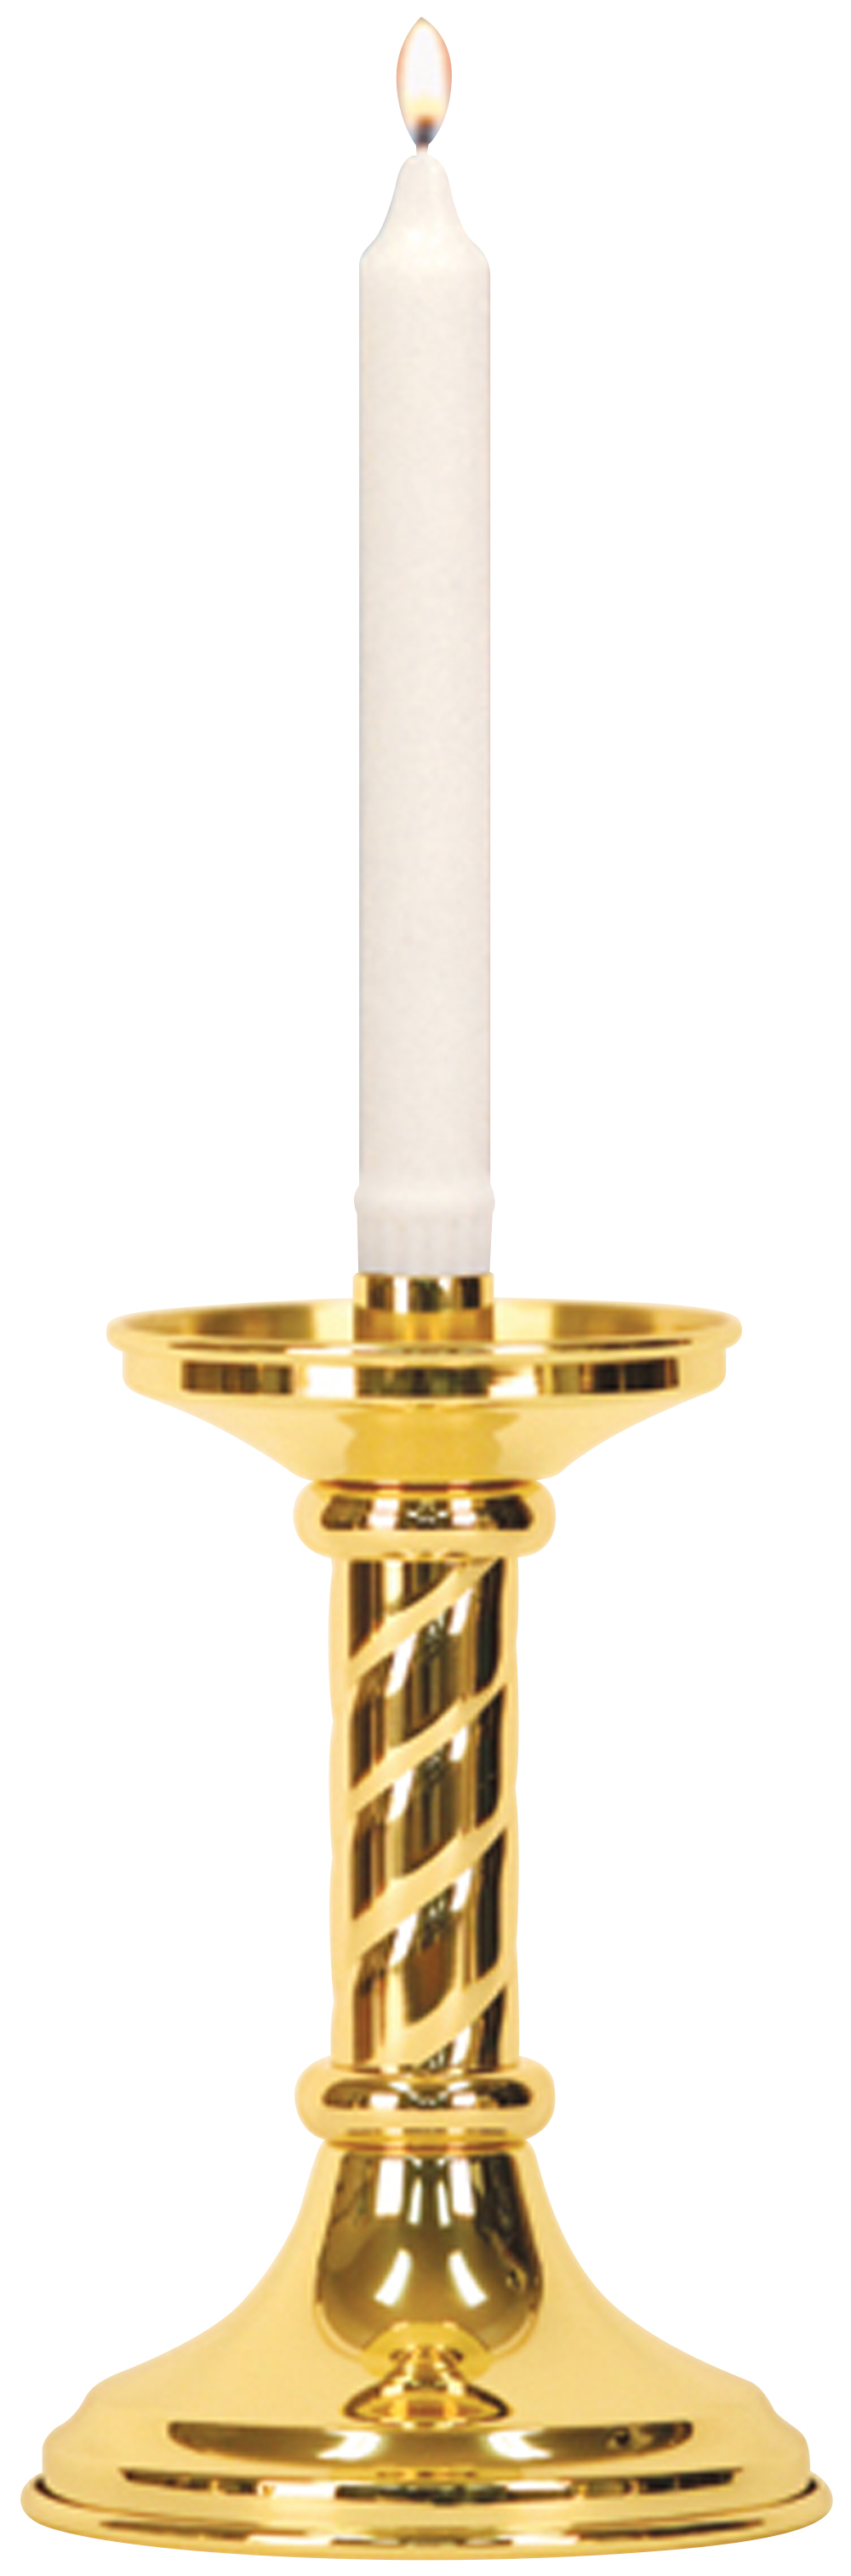 Altar Candlestick 8 inch Helix Design 7/8 Socket